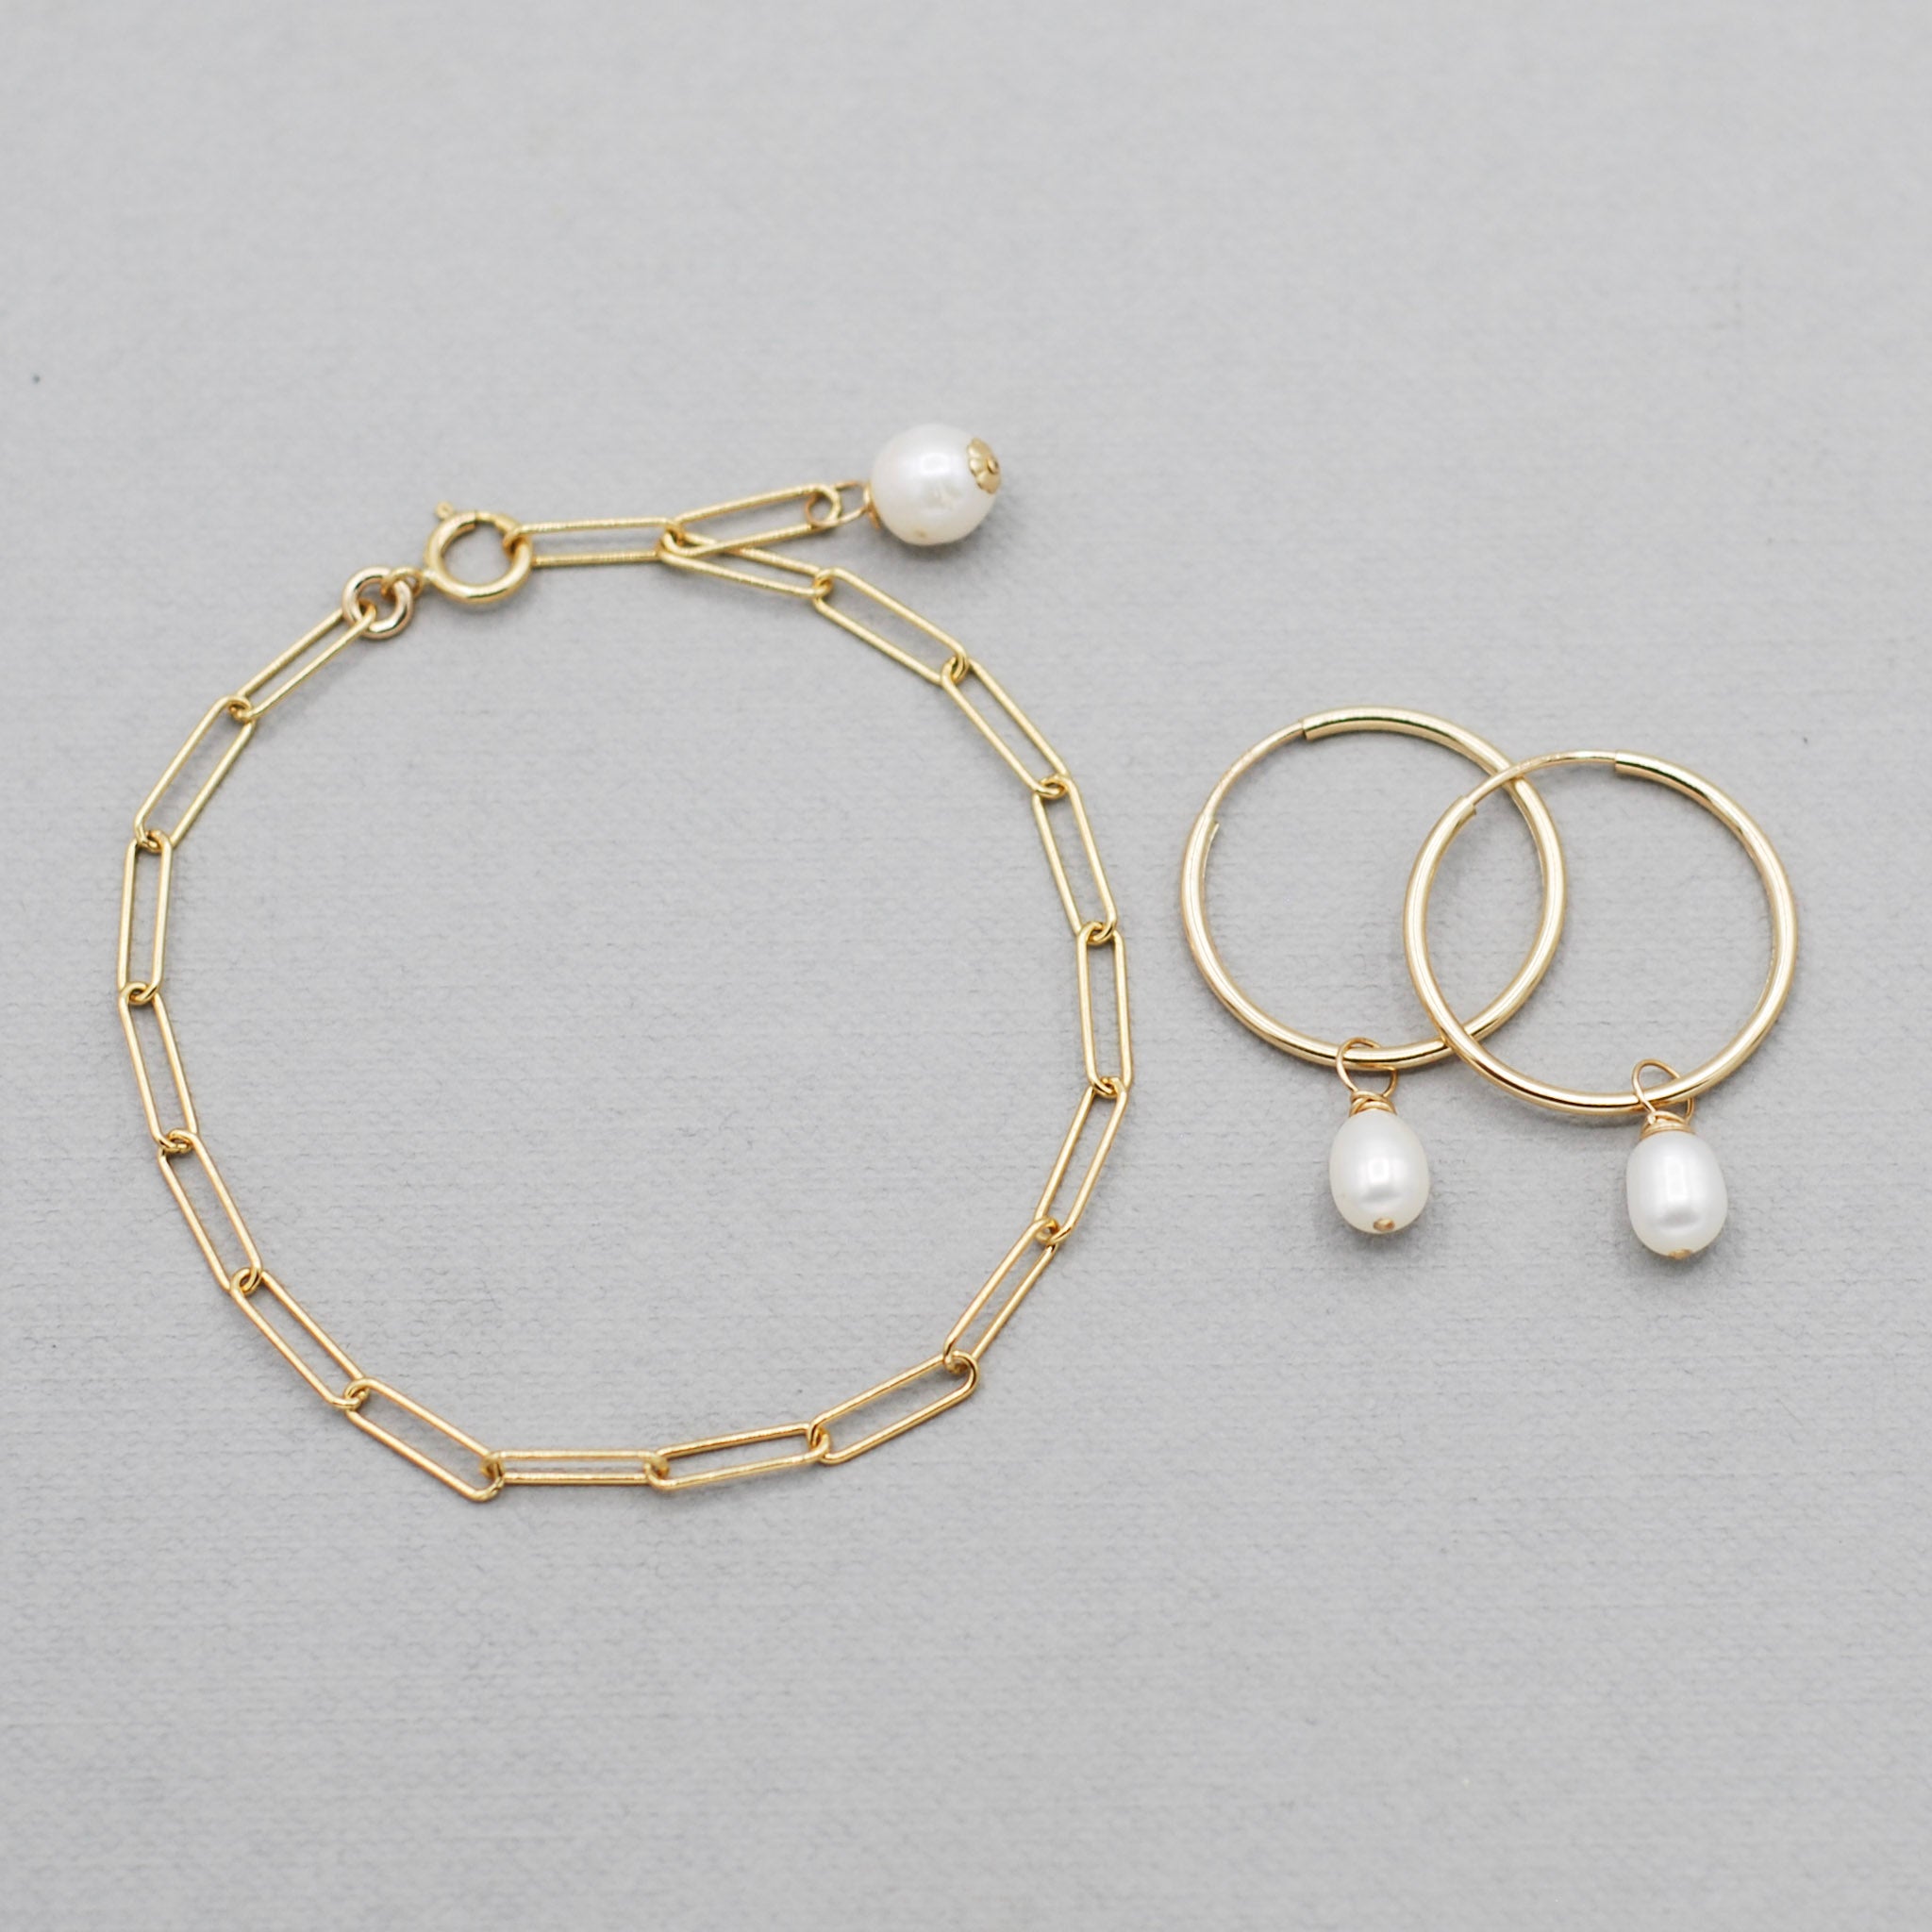 14k Gold Filled Chain Bracelet & Pearl Hoop Set